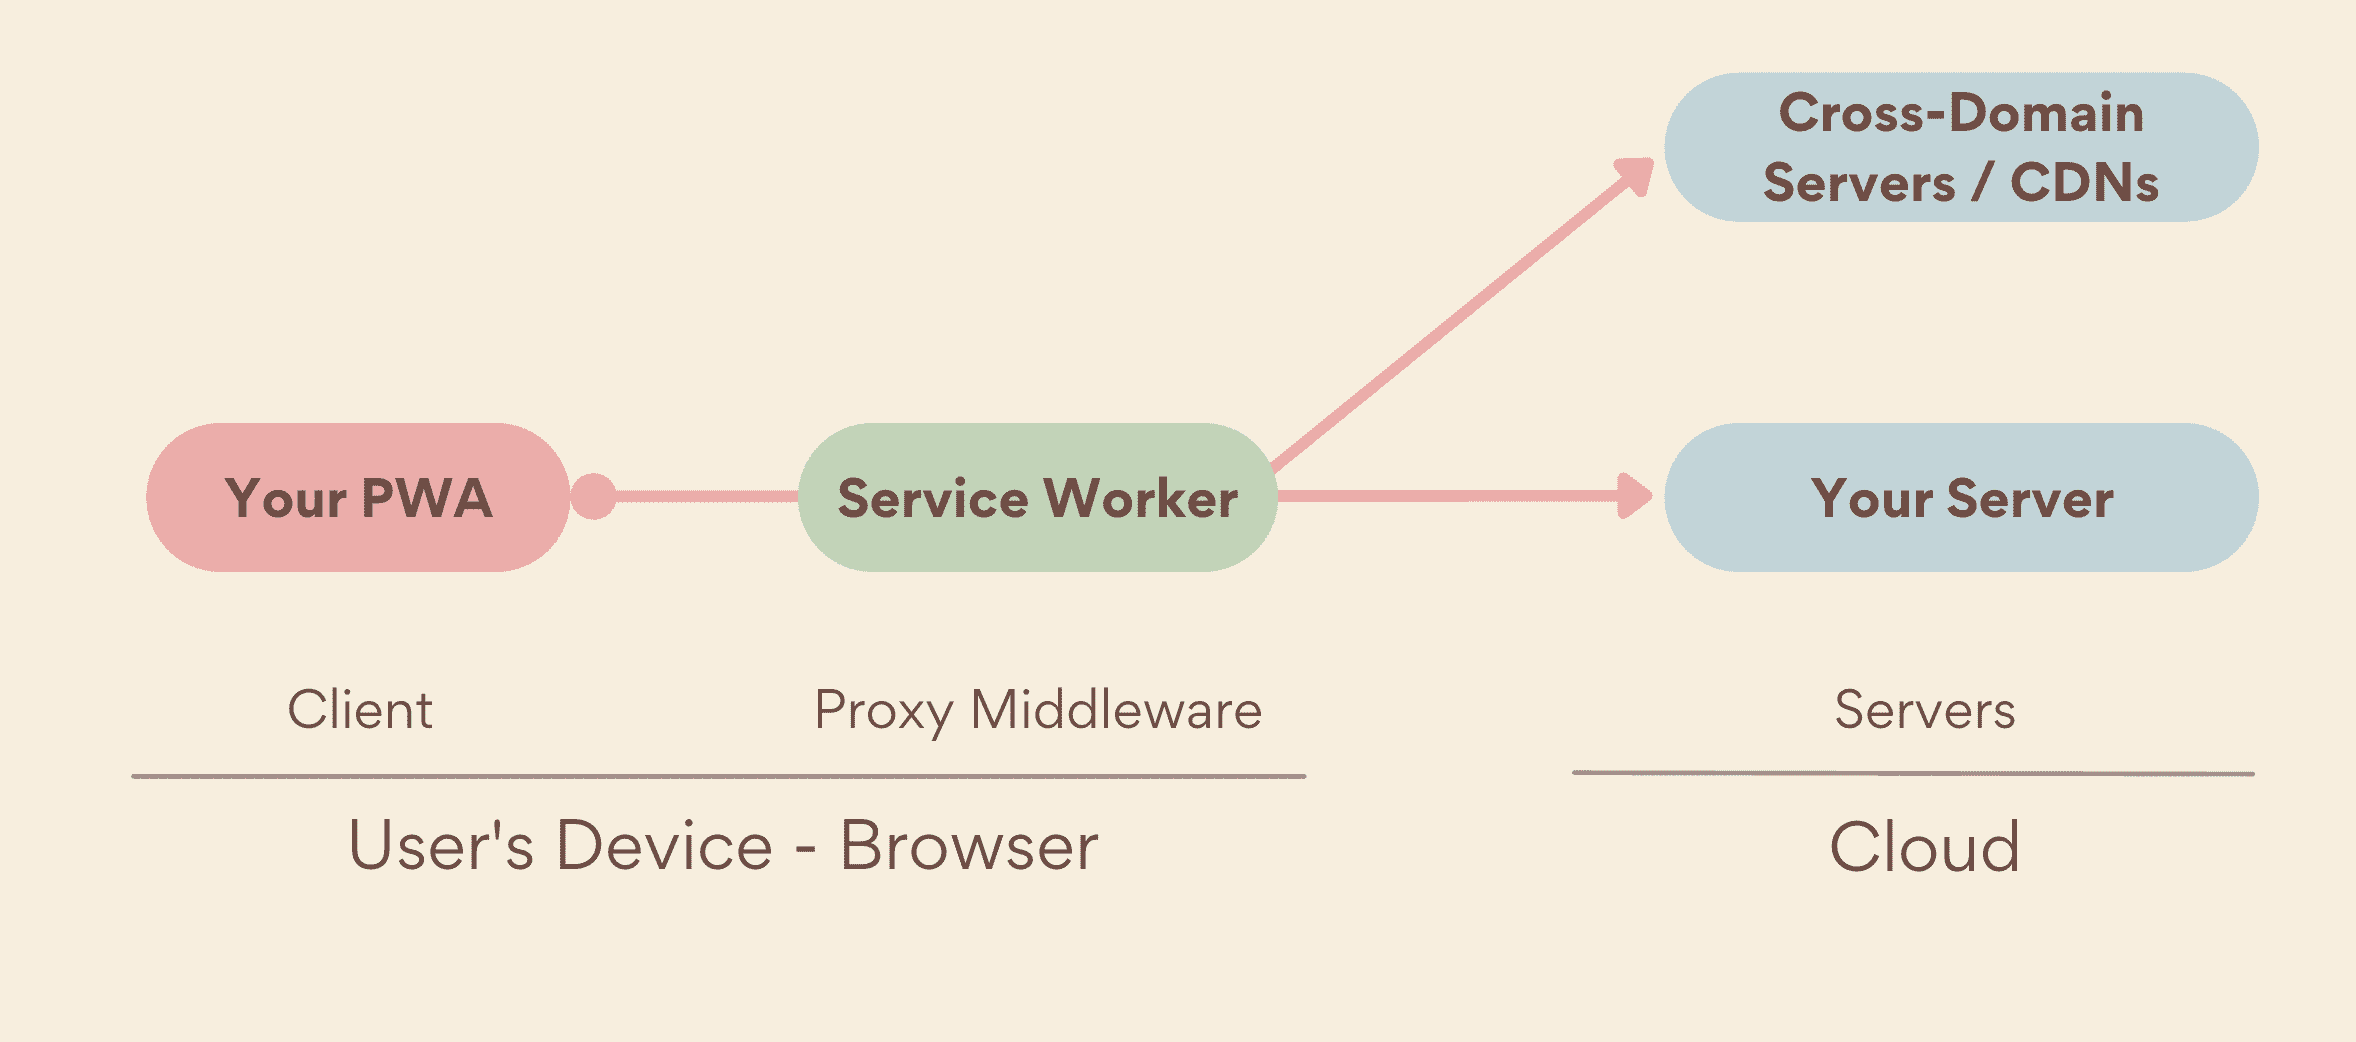 可做為中介軟體 Proxy，在 PWA 和伺服器 (包括自有伺服器和跨網域伺服器) 之間在裝置端運作的 Service Worker。